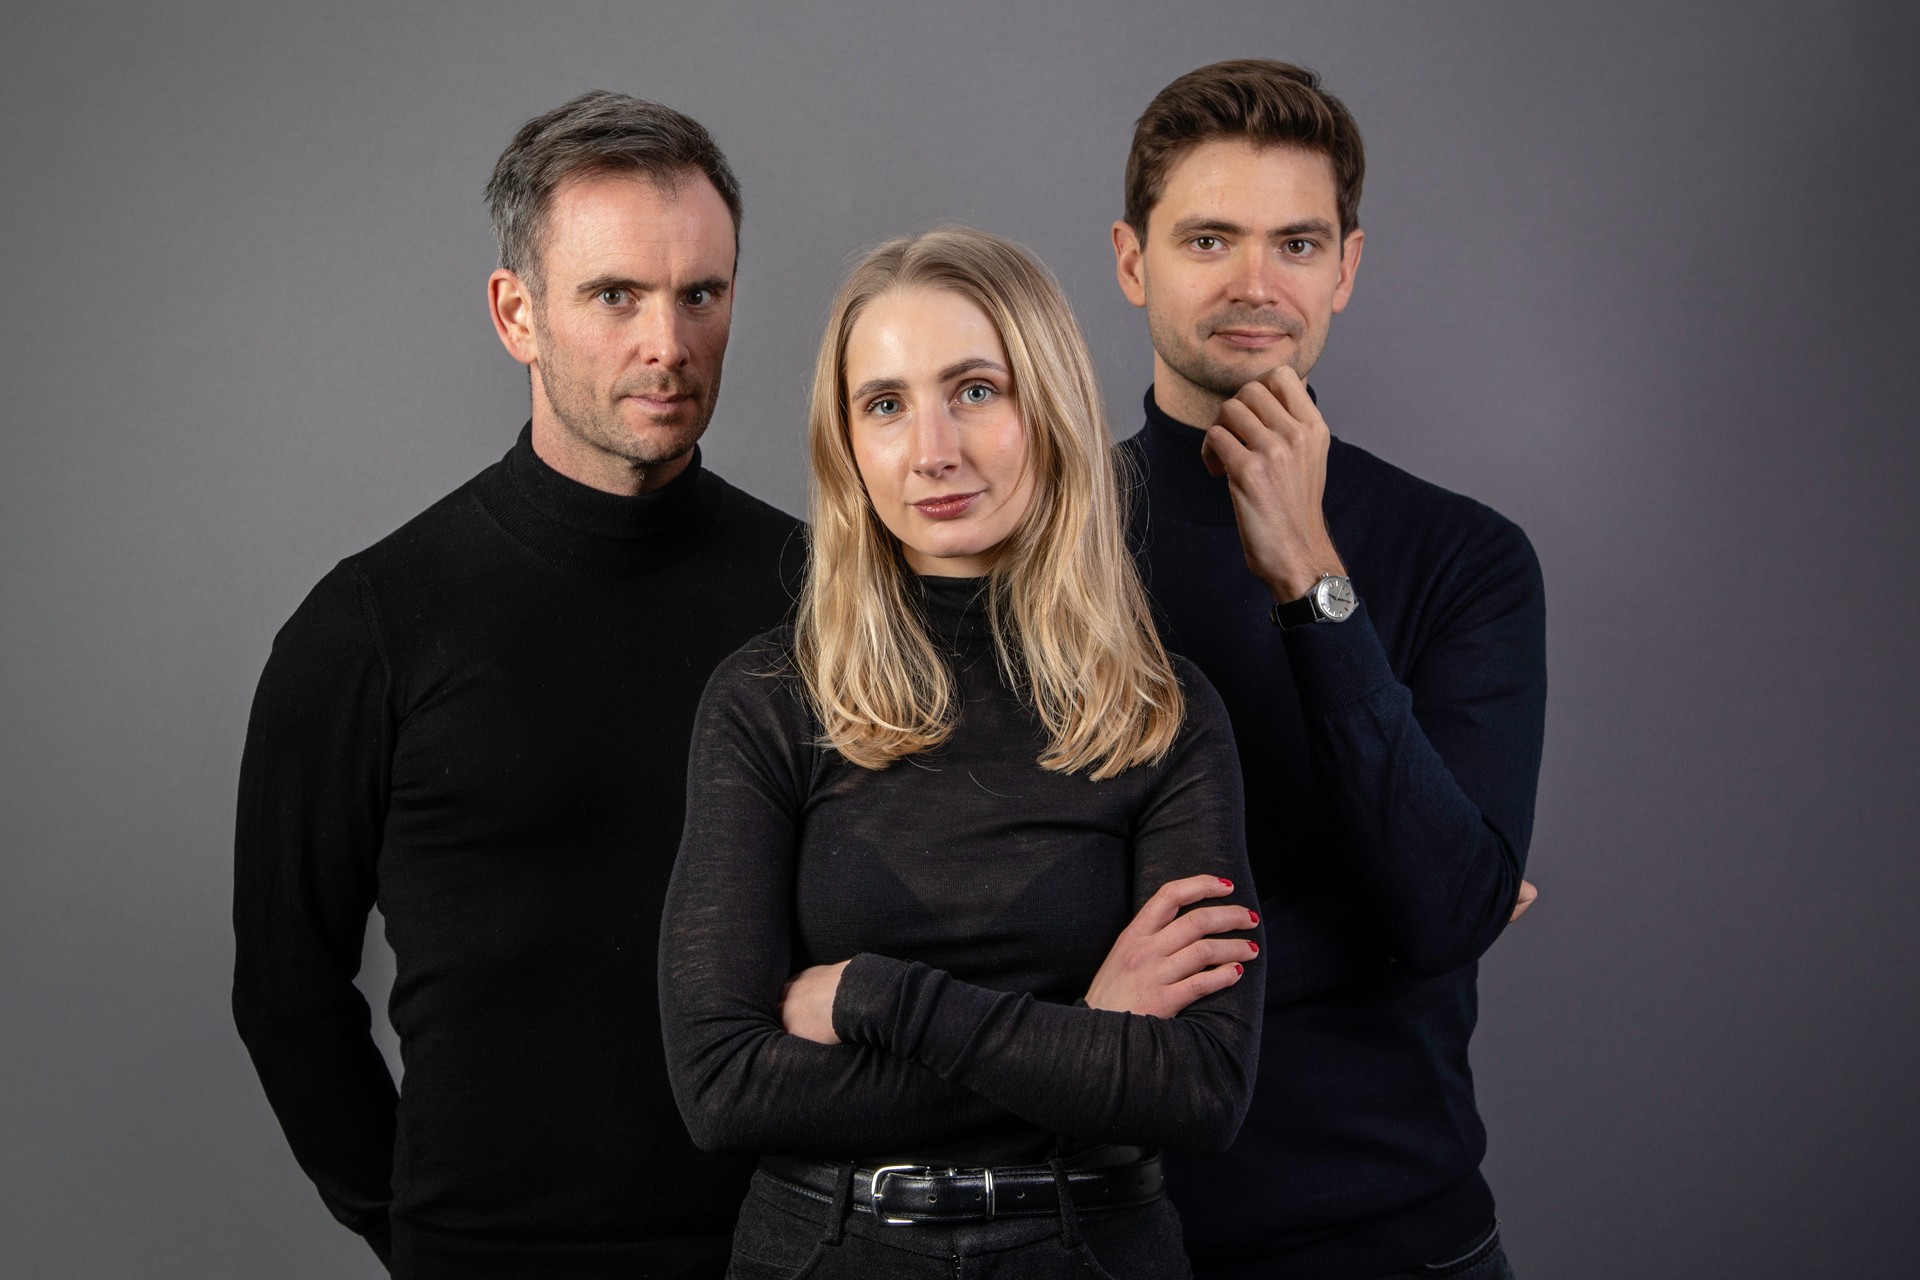 Magnus Marsdal, Kristine Sørheim og Per Søreide Senstad i Redaksjonen. De står samlet og ser inn i kamera kledd i sorte klær med grå bakgrunn.